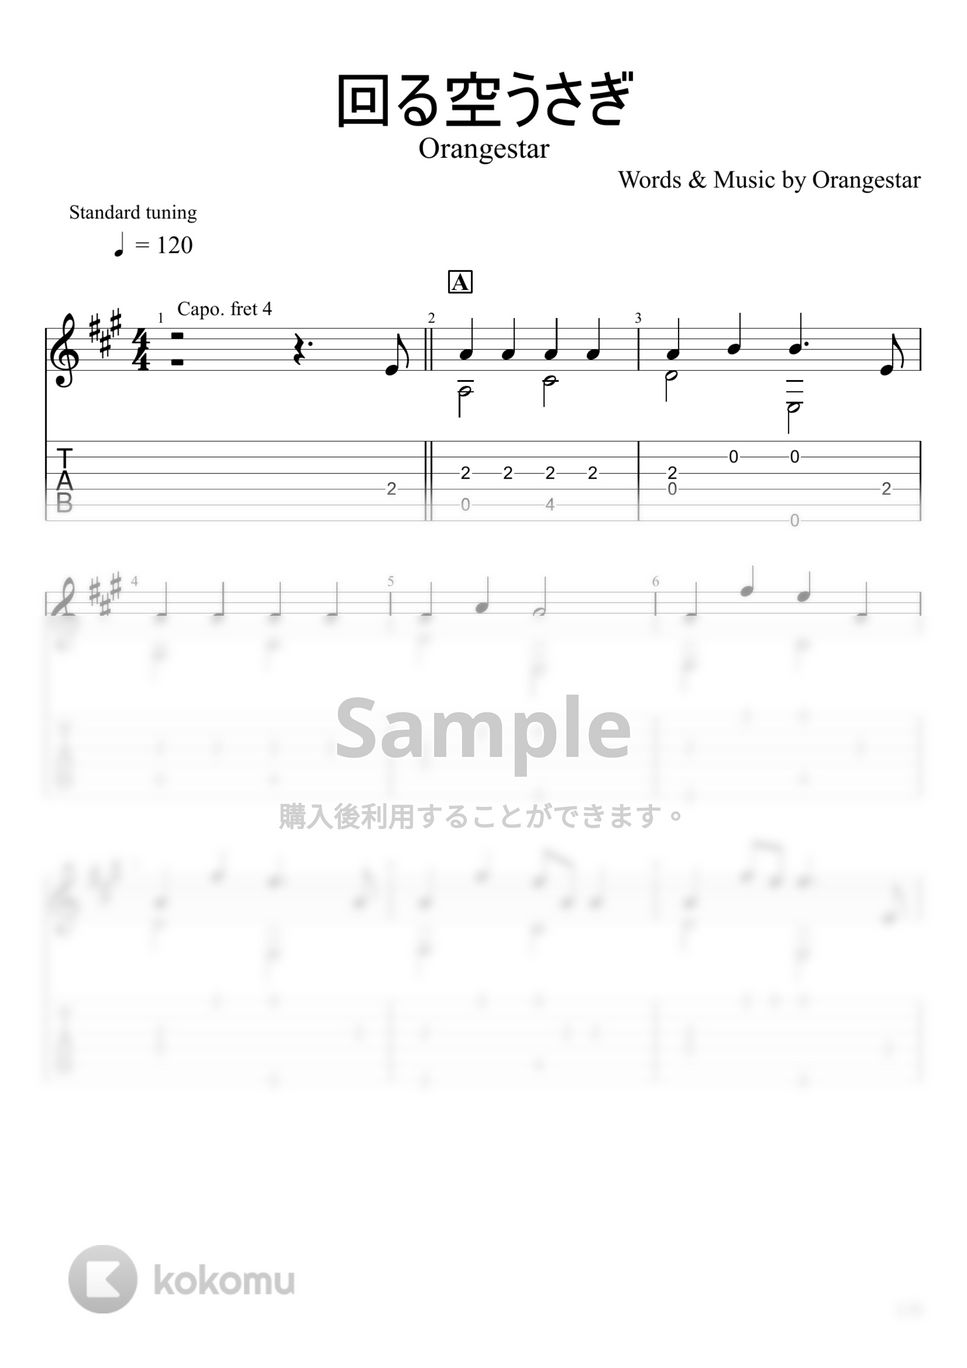 Orangestar - 回る空うさぎ (ソロギター) by u3danchou